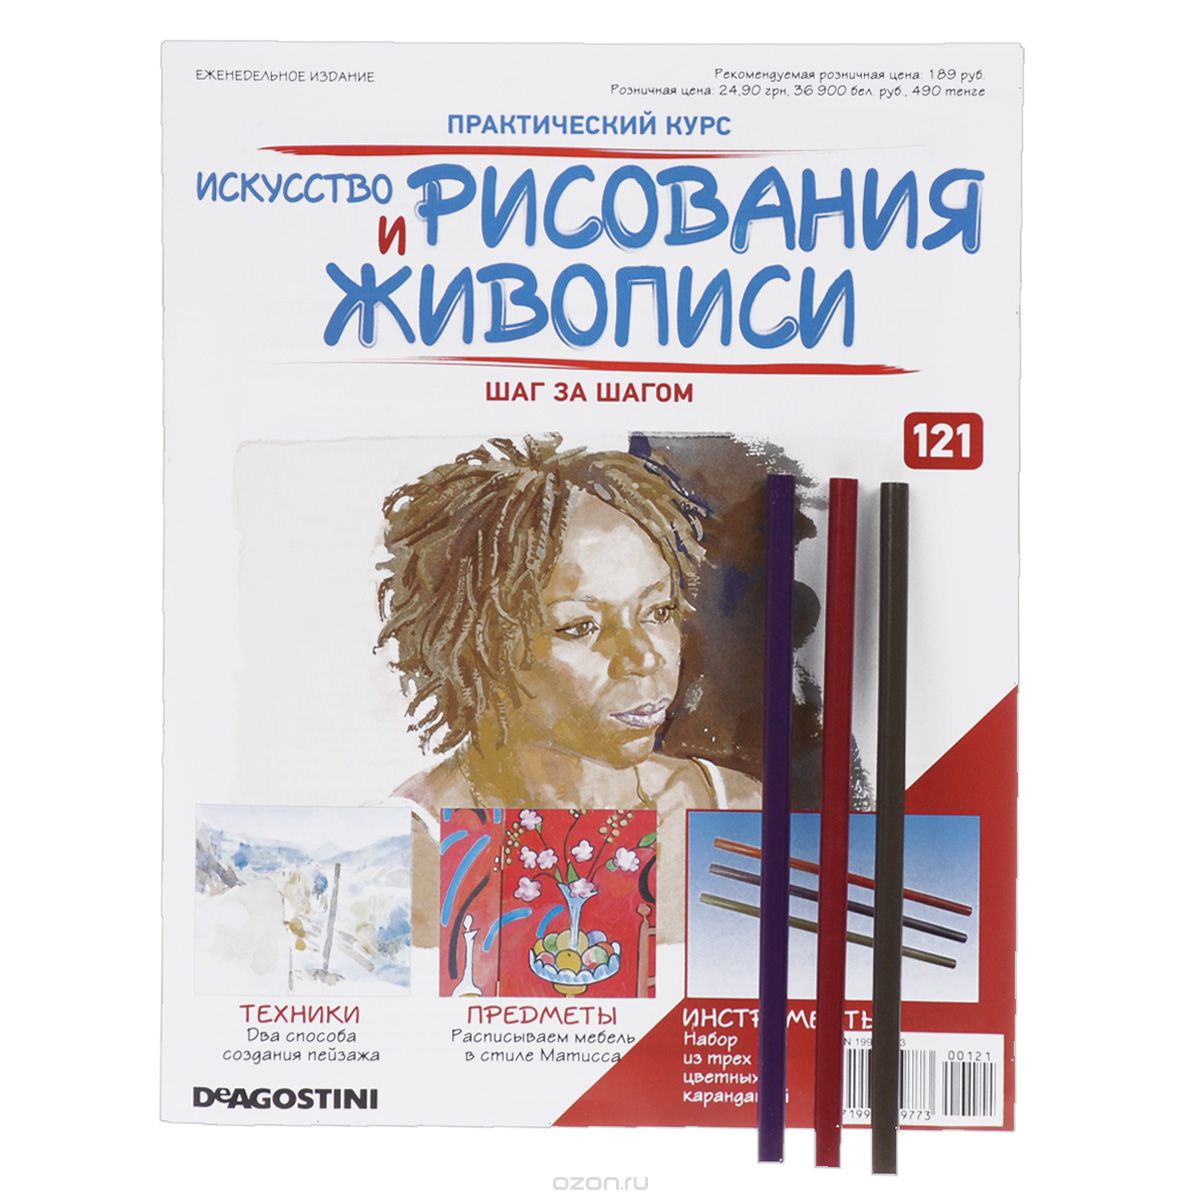 Журнал "Искусство рисования и живописи" №121